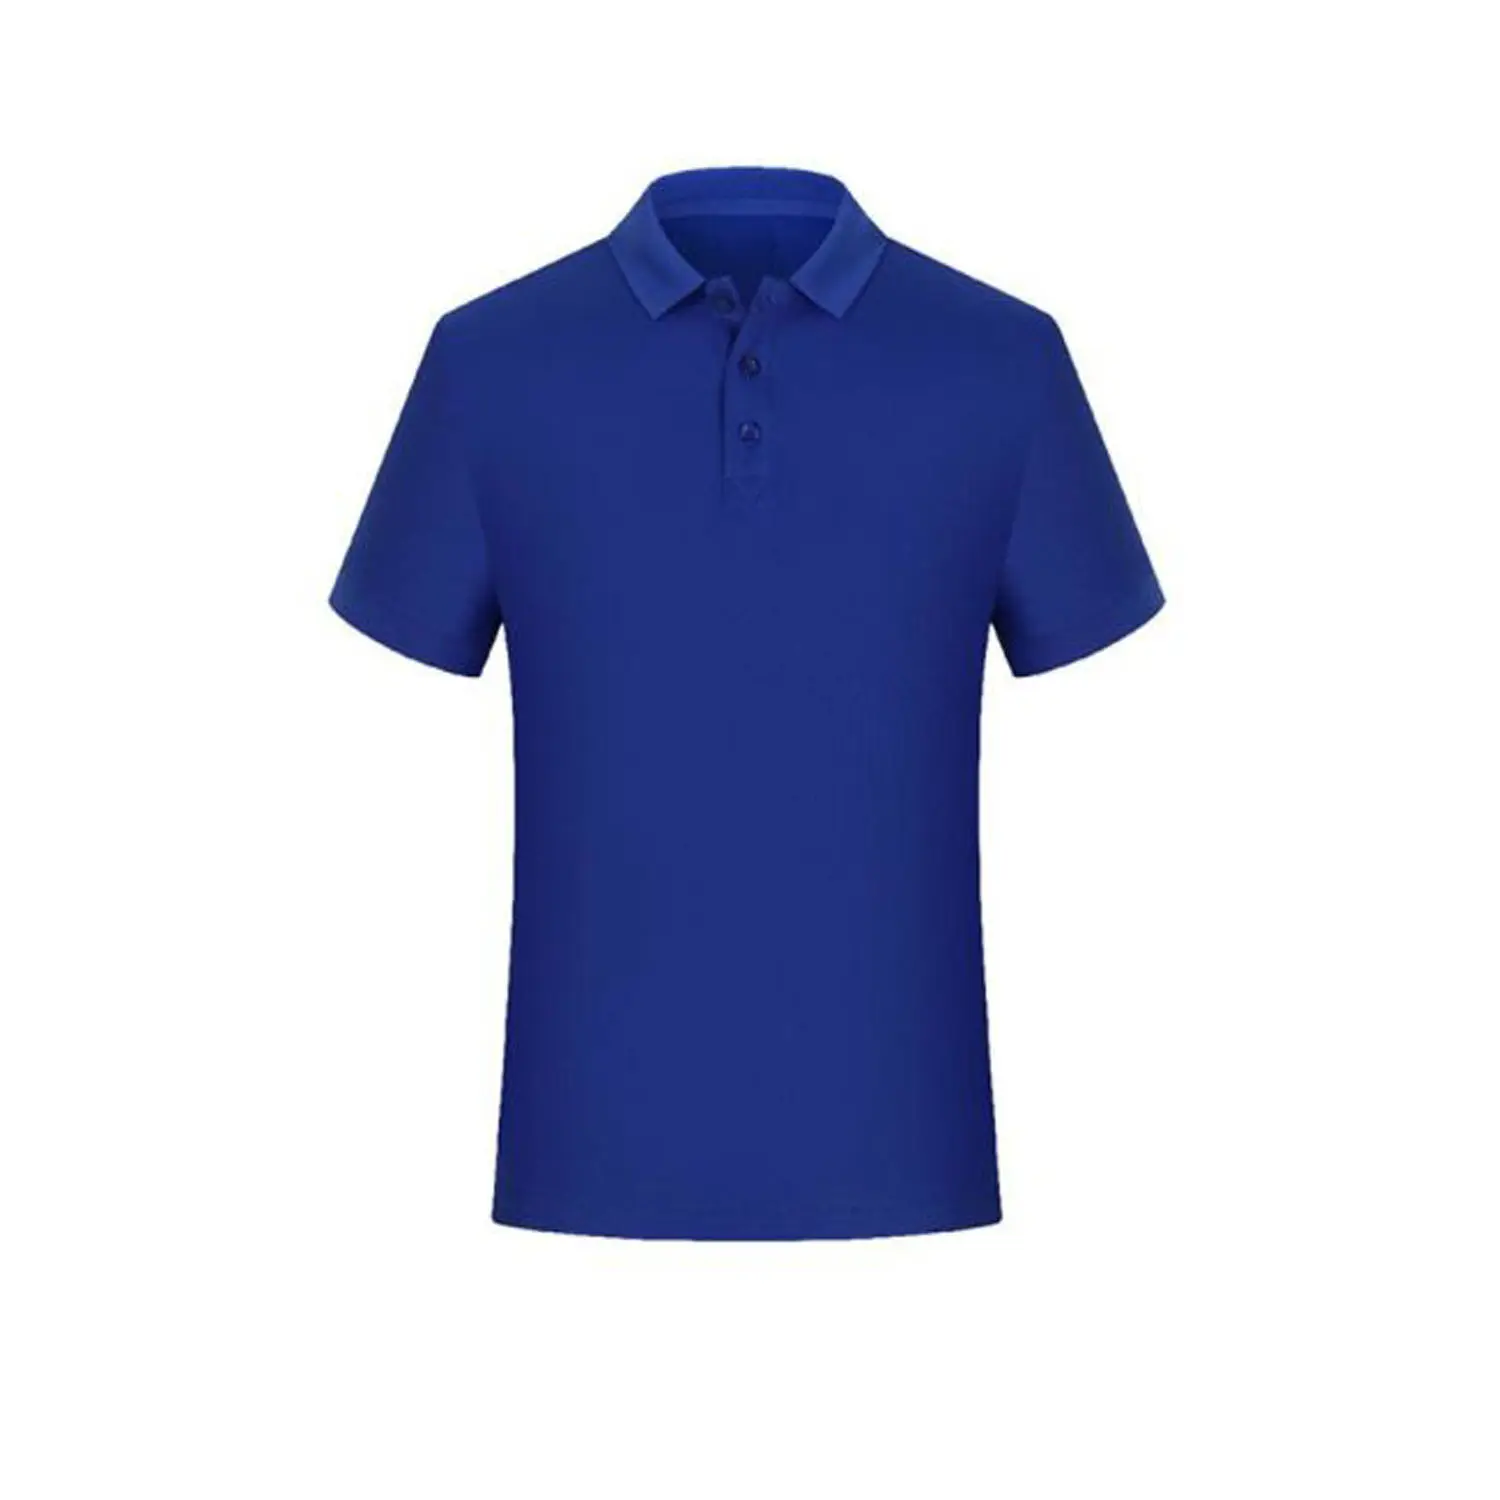 مخصص الملكي اللون رخيصة الرجال ملابس رياضية بولو تي شيرت ، الجملة الرجال الأزرق الملكي مع المطبوعة شعار OEM بولو تي شيرت